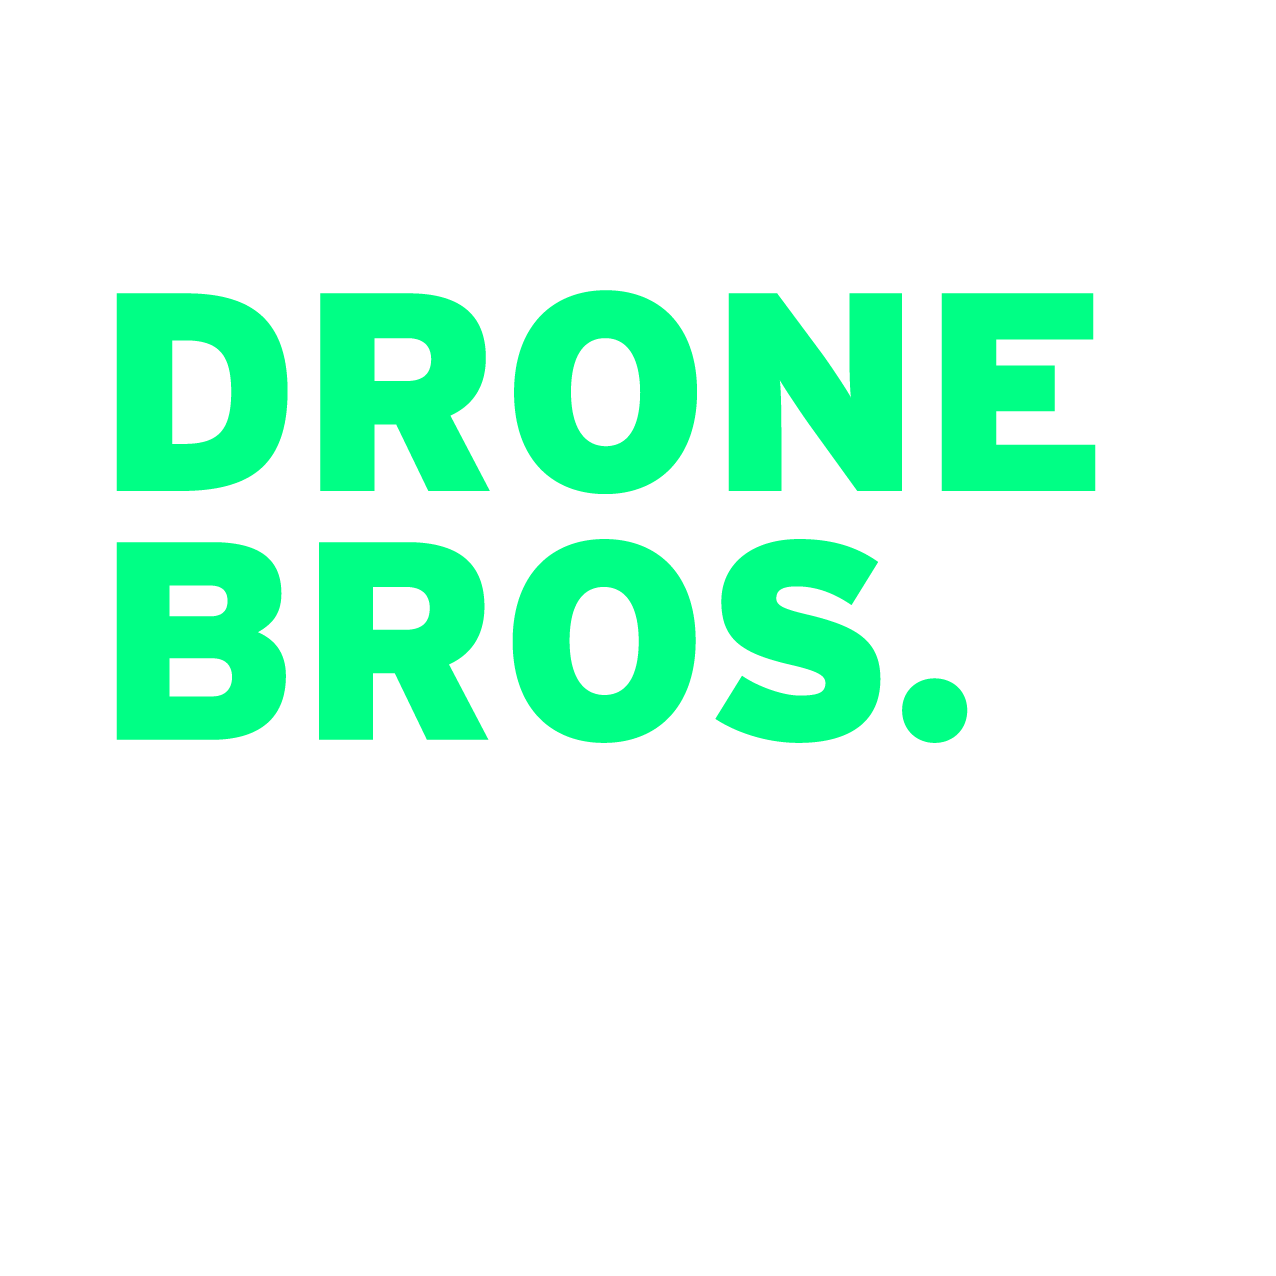 Knox Drone Bros.